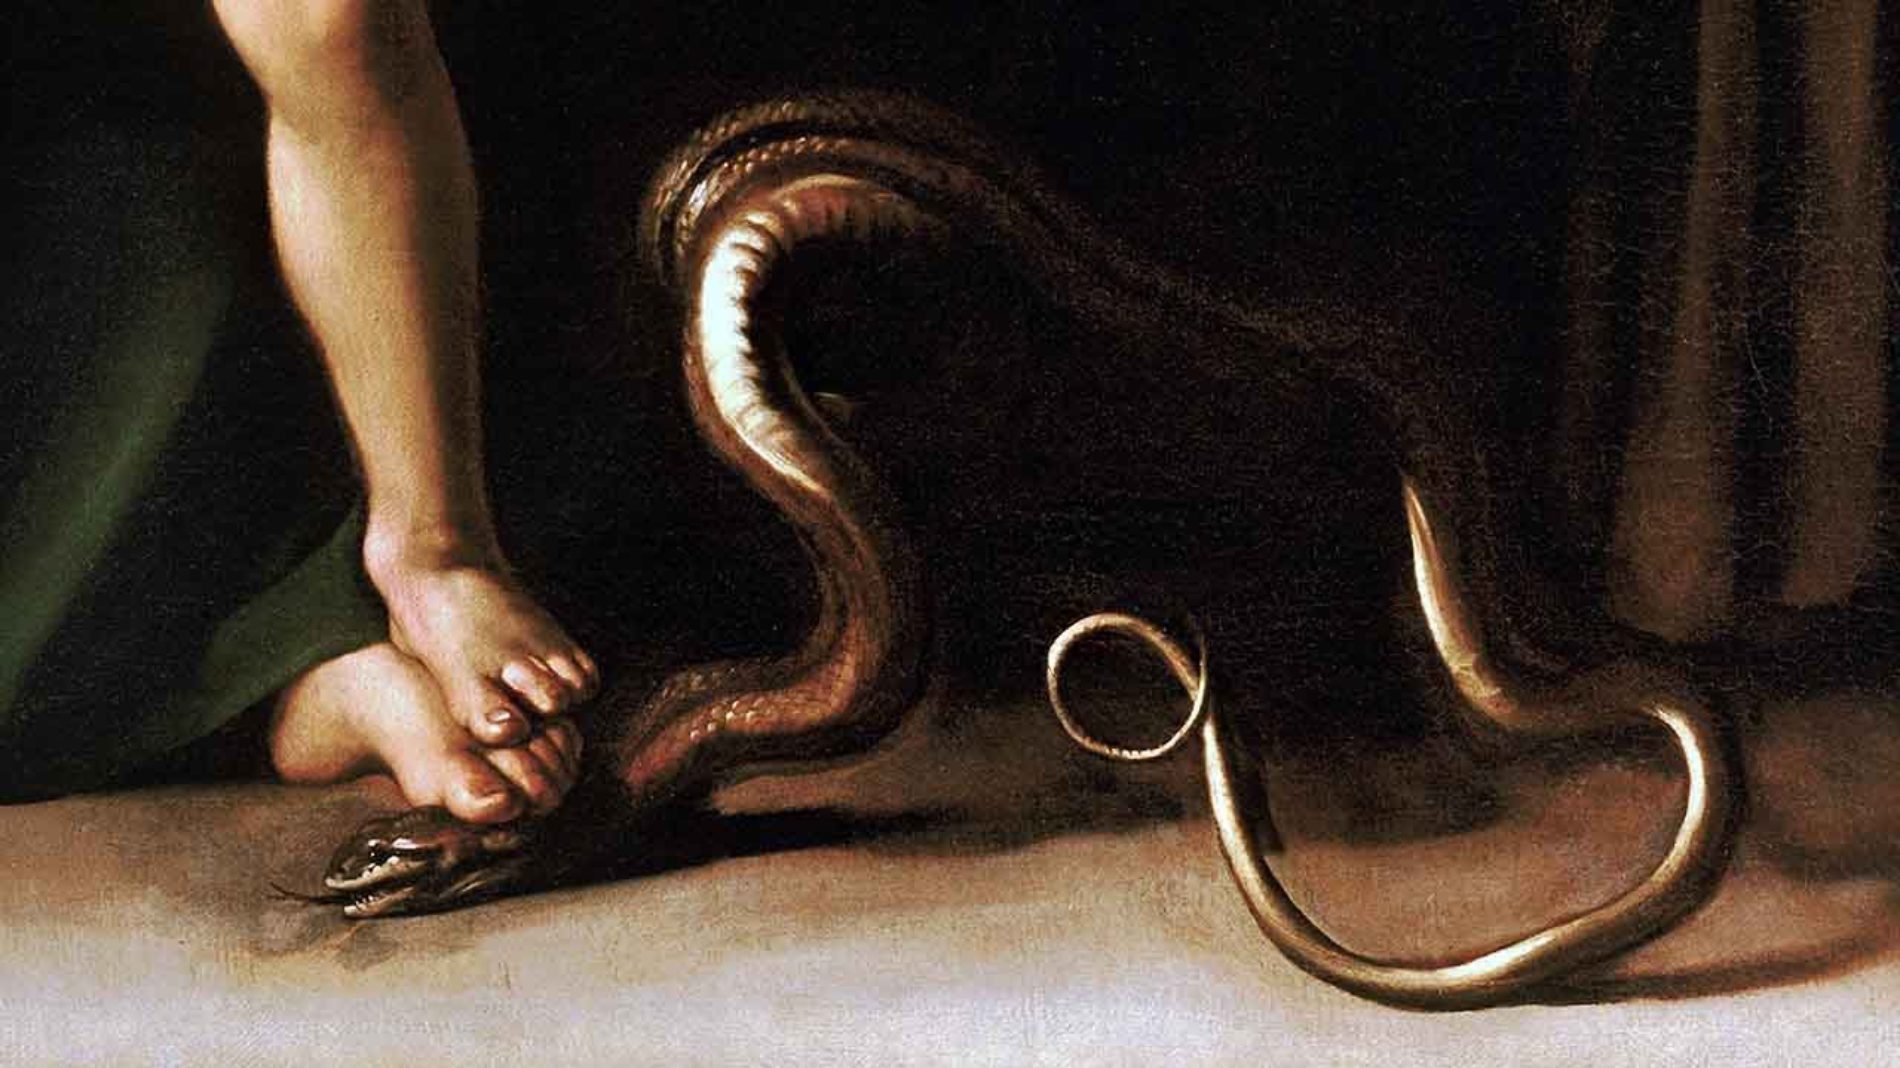 “Maria esmaga a cabeça da serpente”